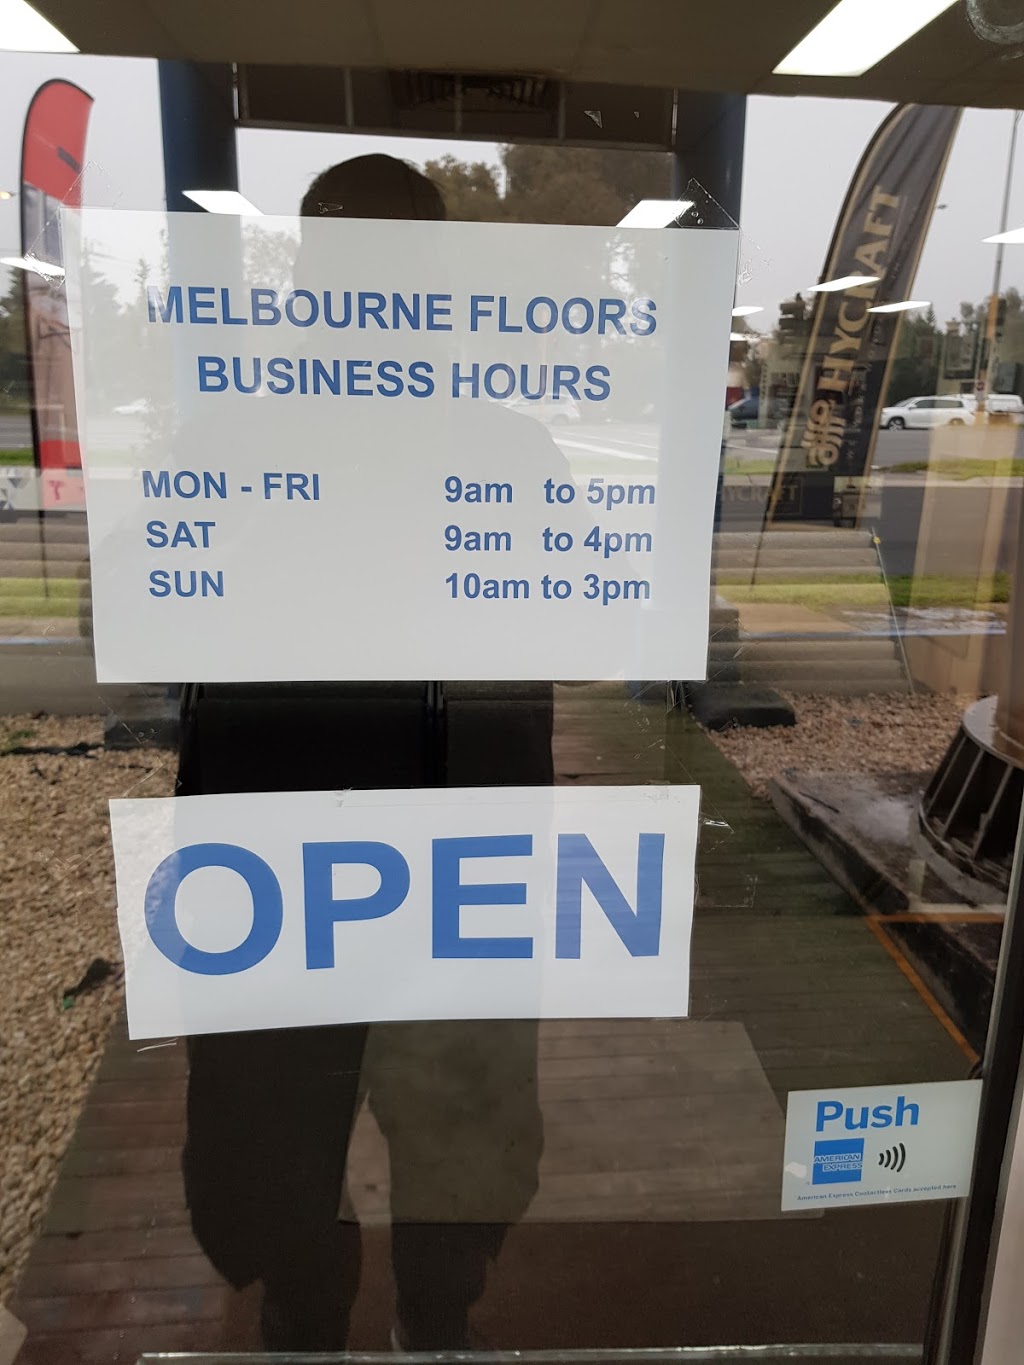 Melbourne Floors & Rugs | 841-843 Nepean Hwy, Brighton East VIC 3204, Australia | Phone: (03) 9557 5600